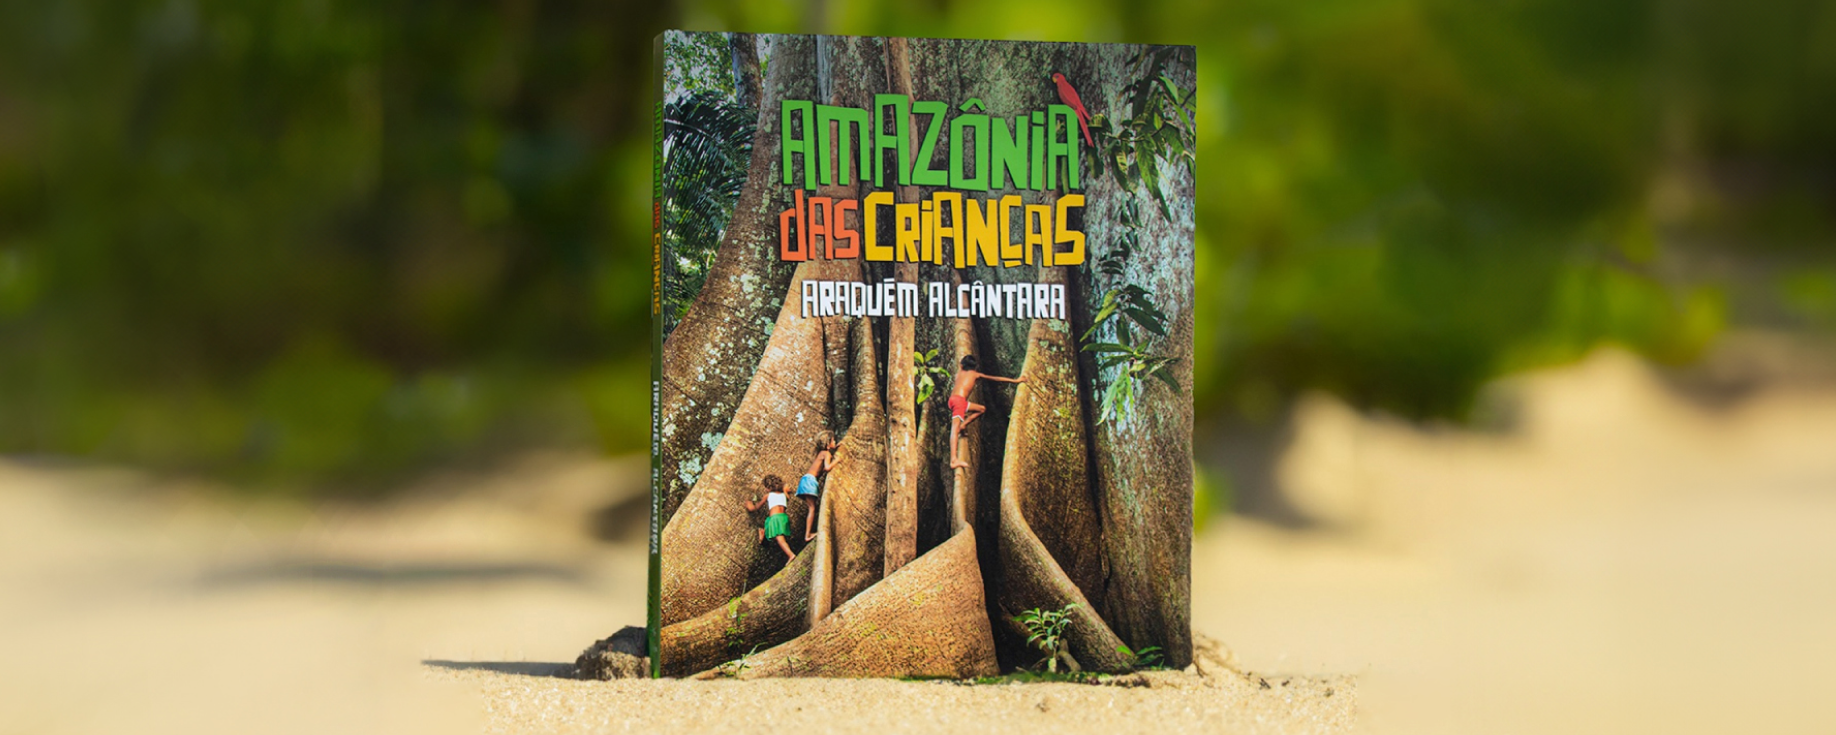 Livro Amazônia das Crianças.